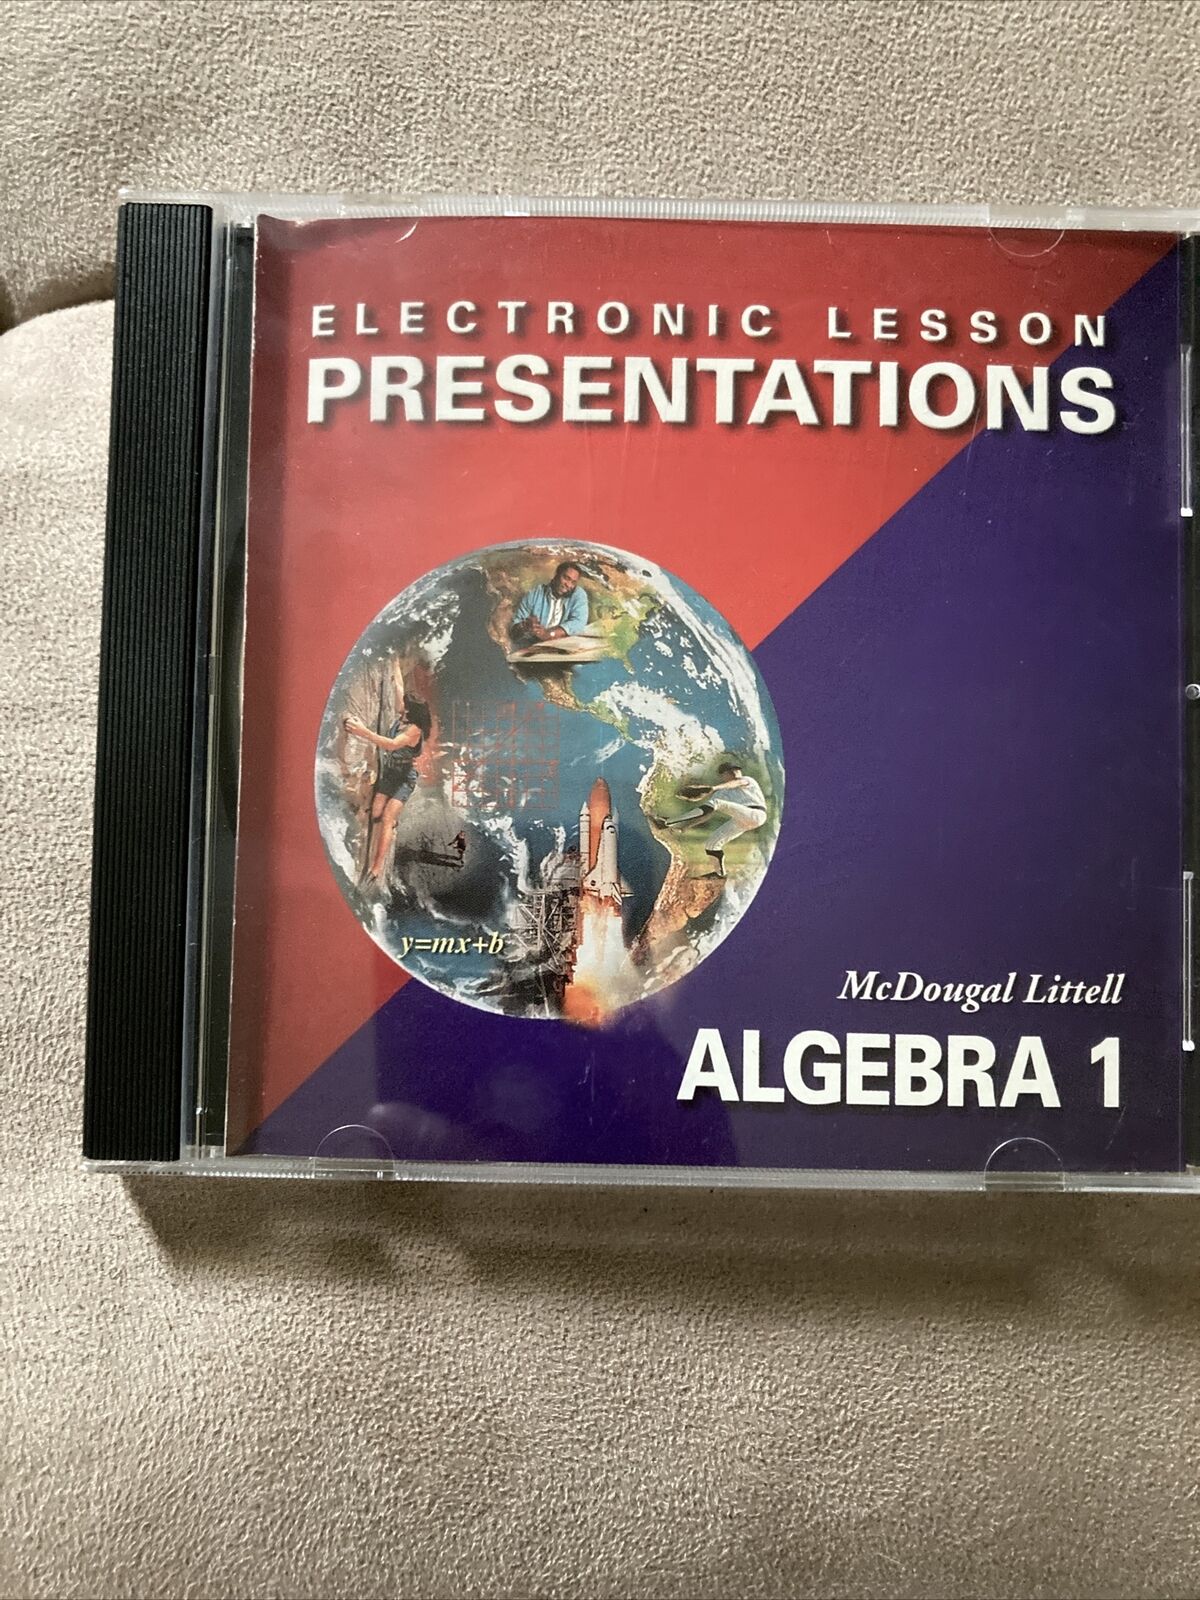 McDougal Littell Algebra 1 Electronic Lesson Presentations CD-ROM